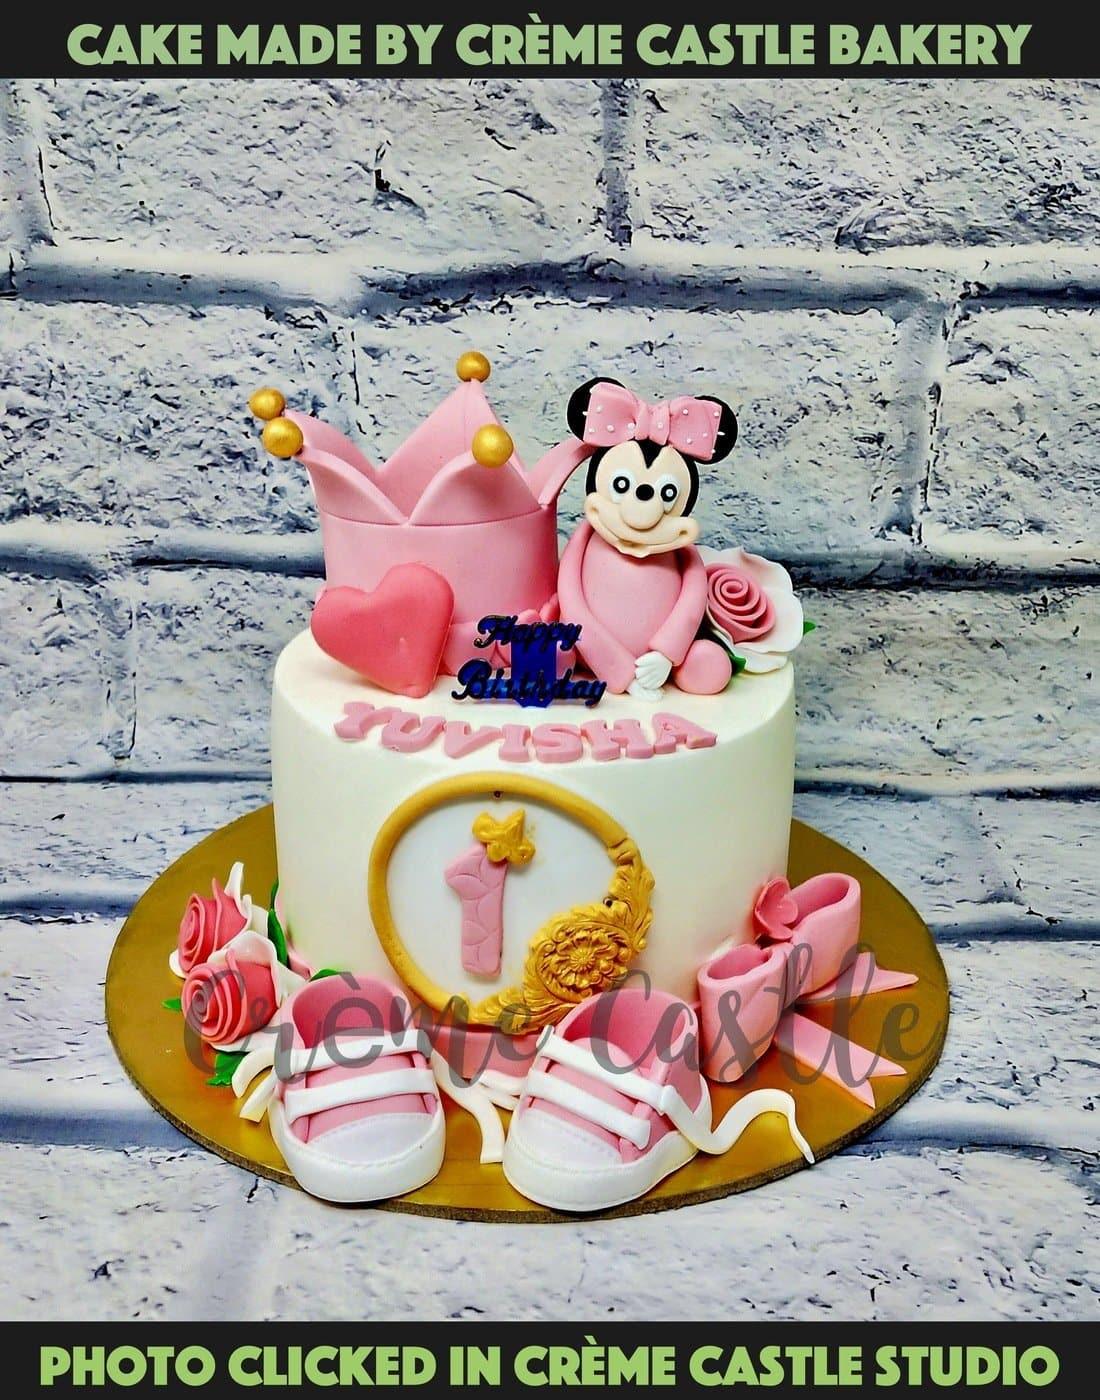 Dans la cuisine d'Hilary: Pinata cake version Minnie Mouse pour les 2 ans  d'une princesse / Minnie Mouse Pinata cake for a 2 year old princess